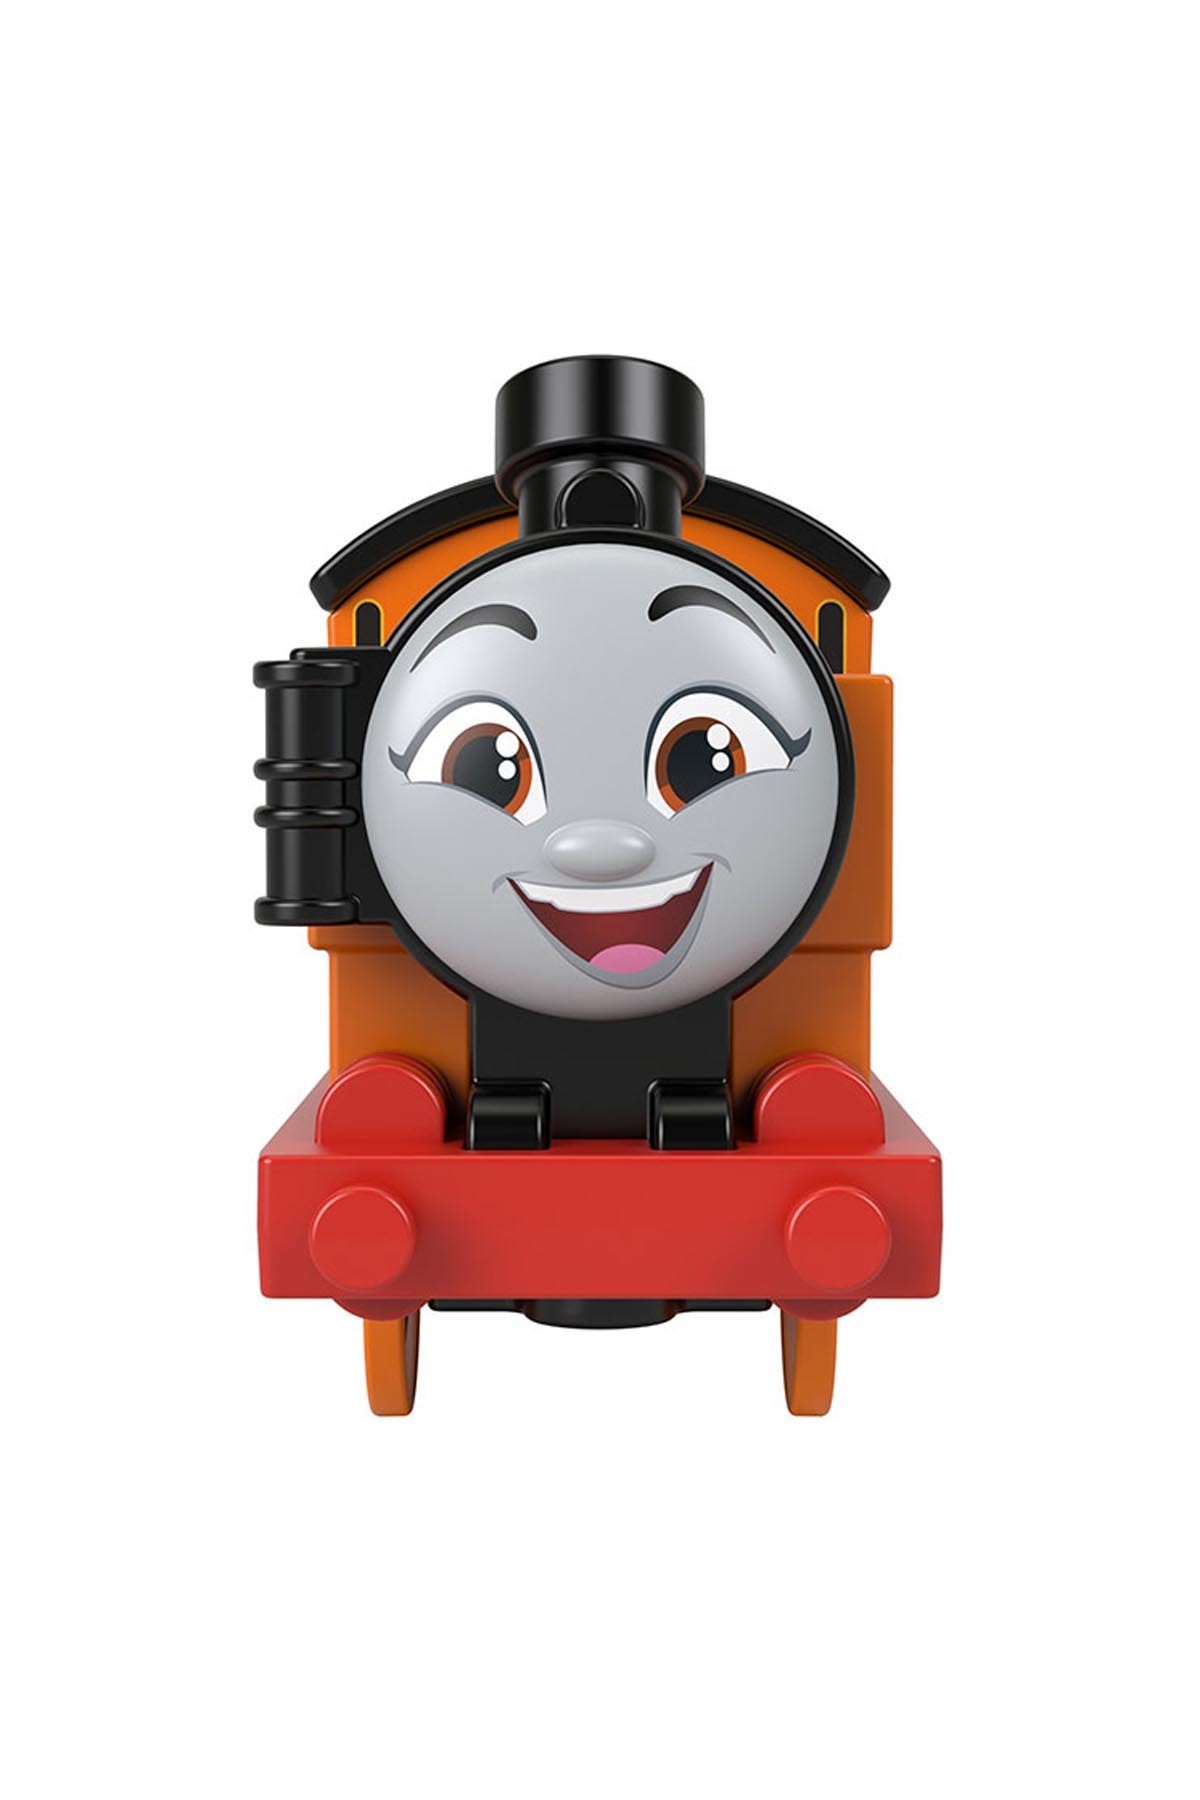 Thomas ve Arkadaşları Motorlu Büyük Tekli Trenler Ana Karakterler HDY63